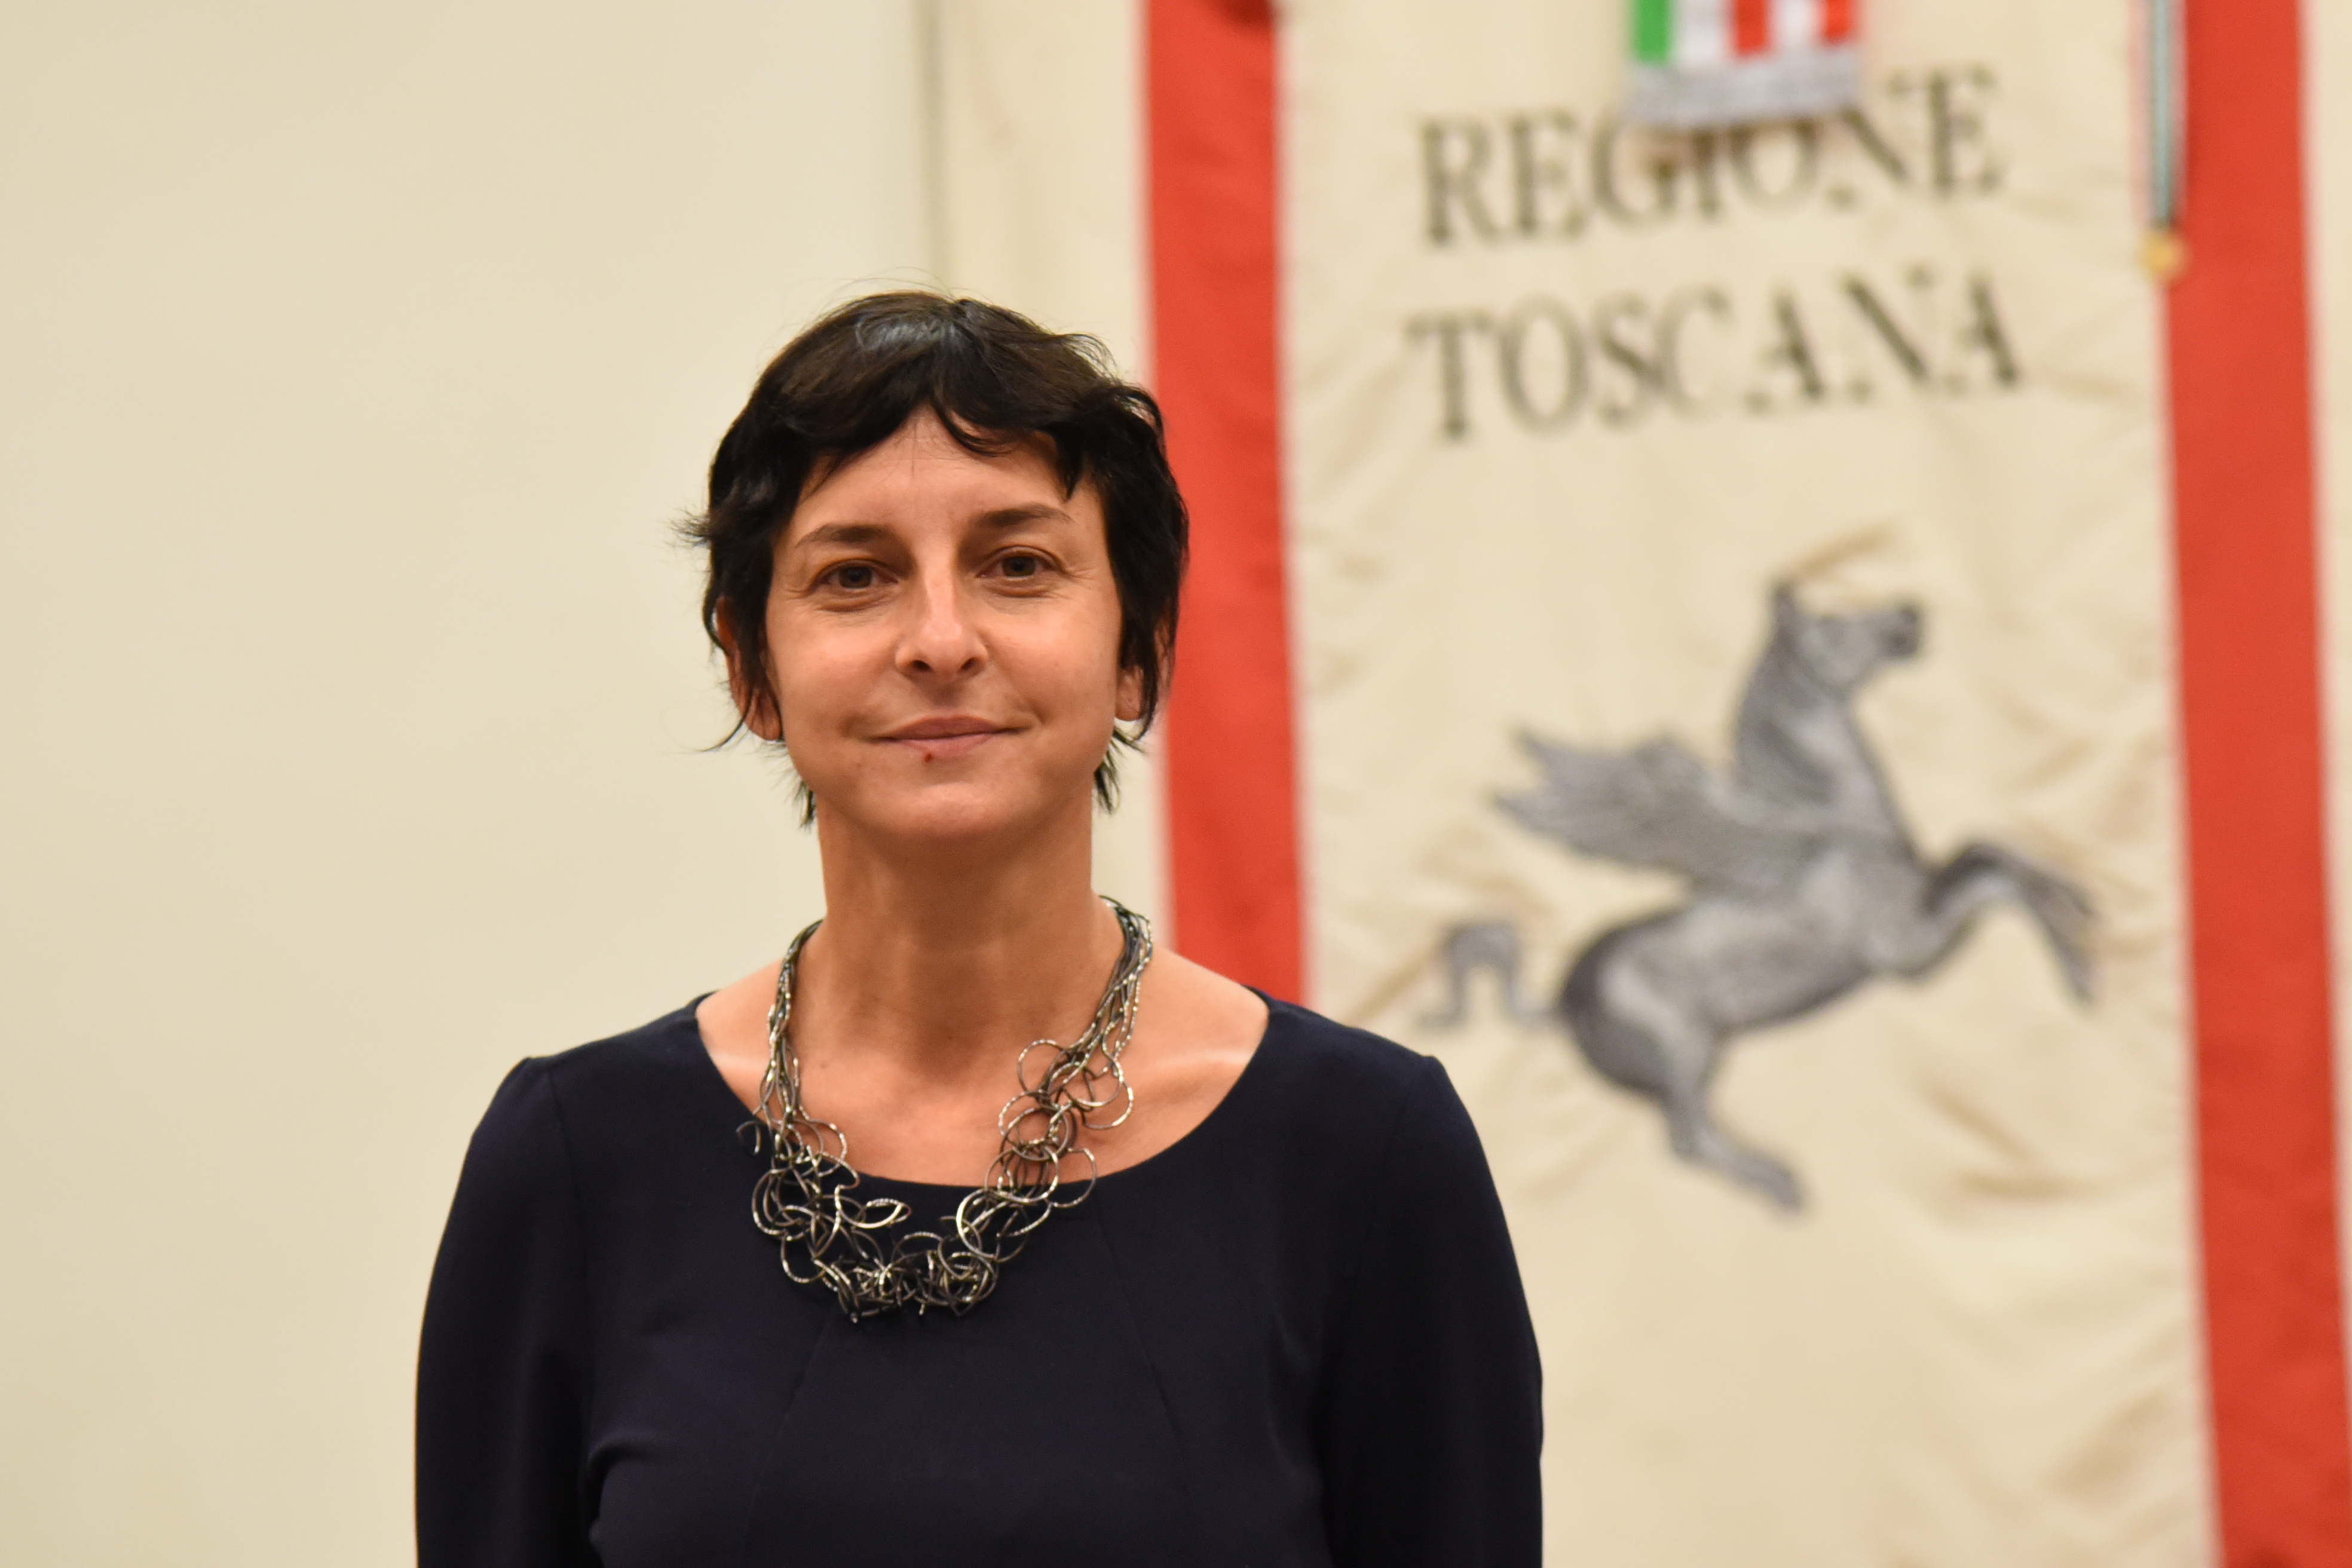 Pubblico e Terzo settore per le comunità locali: Serena Spinelli al convegno di Lucca